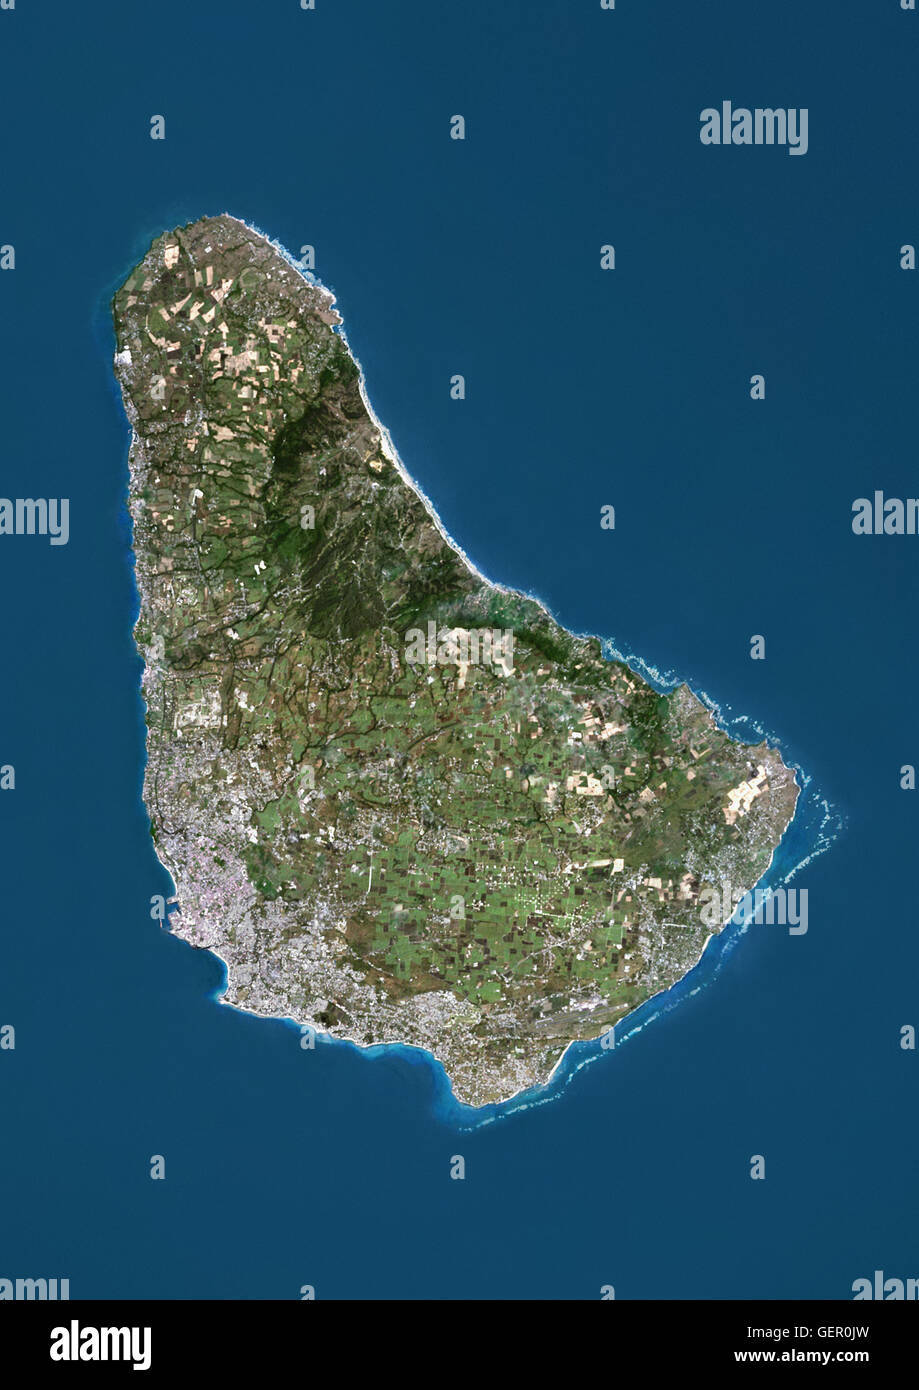 Satellitenansicht von Barbados. Dieses Bild wurde aus Daten von Landsat-Satelliten erworben erstellt. Stockfoto